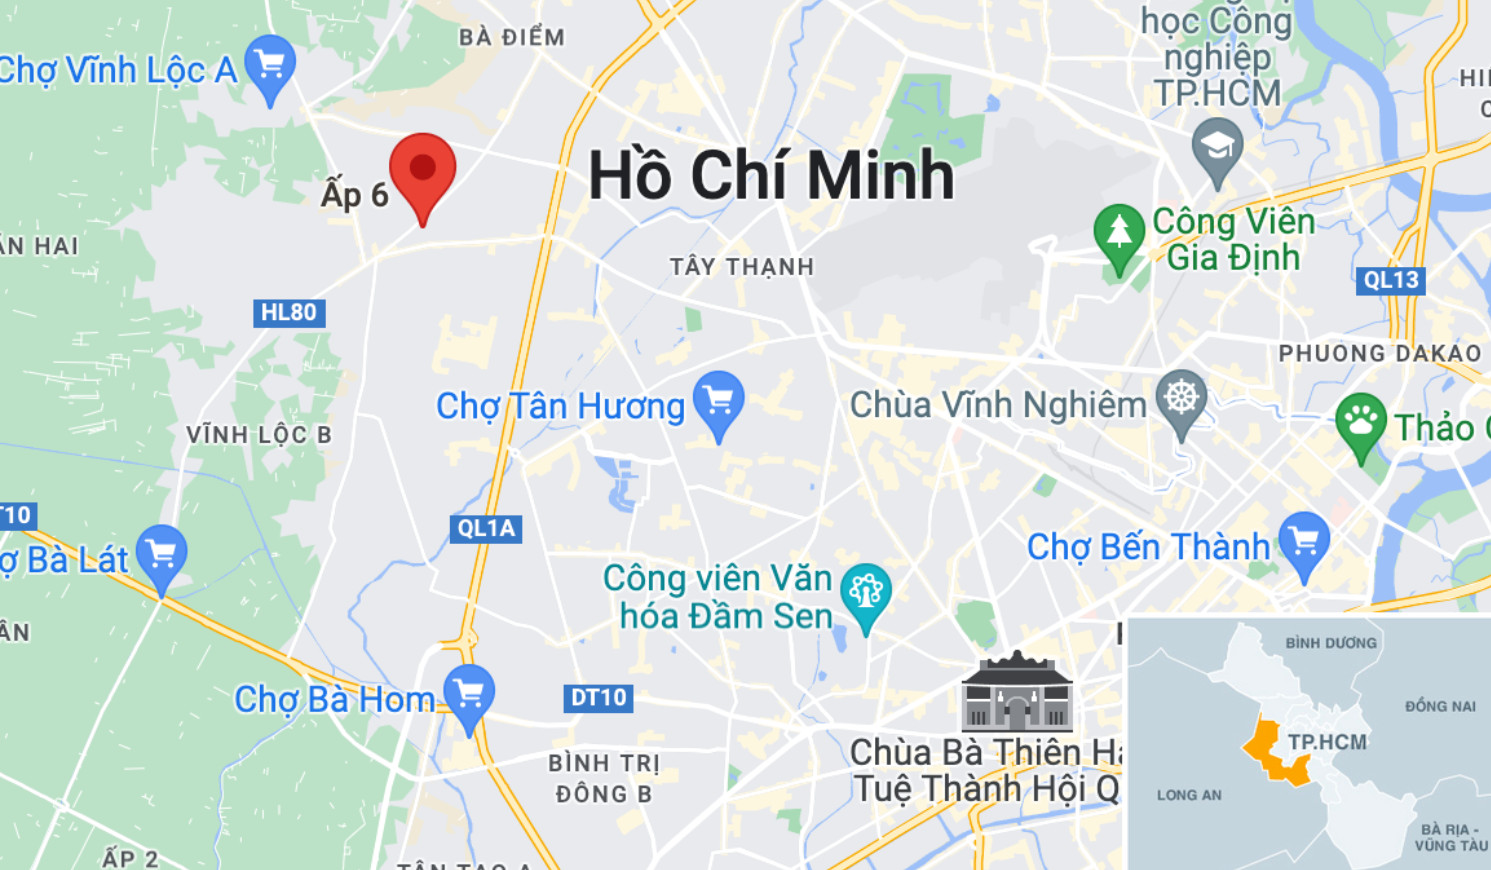 Vụ cháy xảy ra tại ấp 6, xã Vĩnh Lộc A, huyện Bình Chánh. Ảnh: Google Maps.